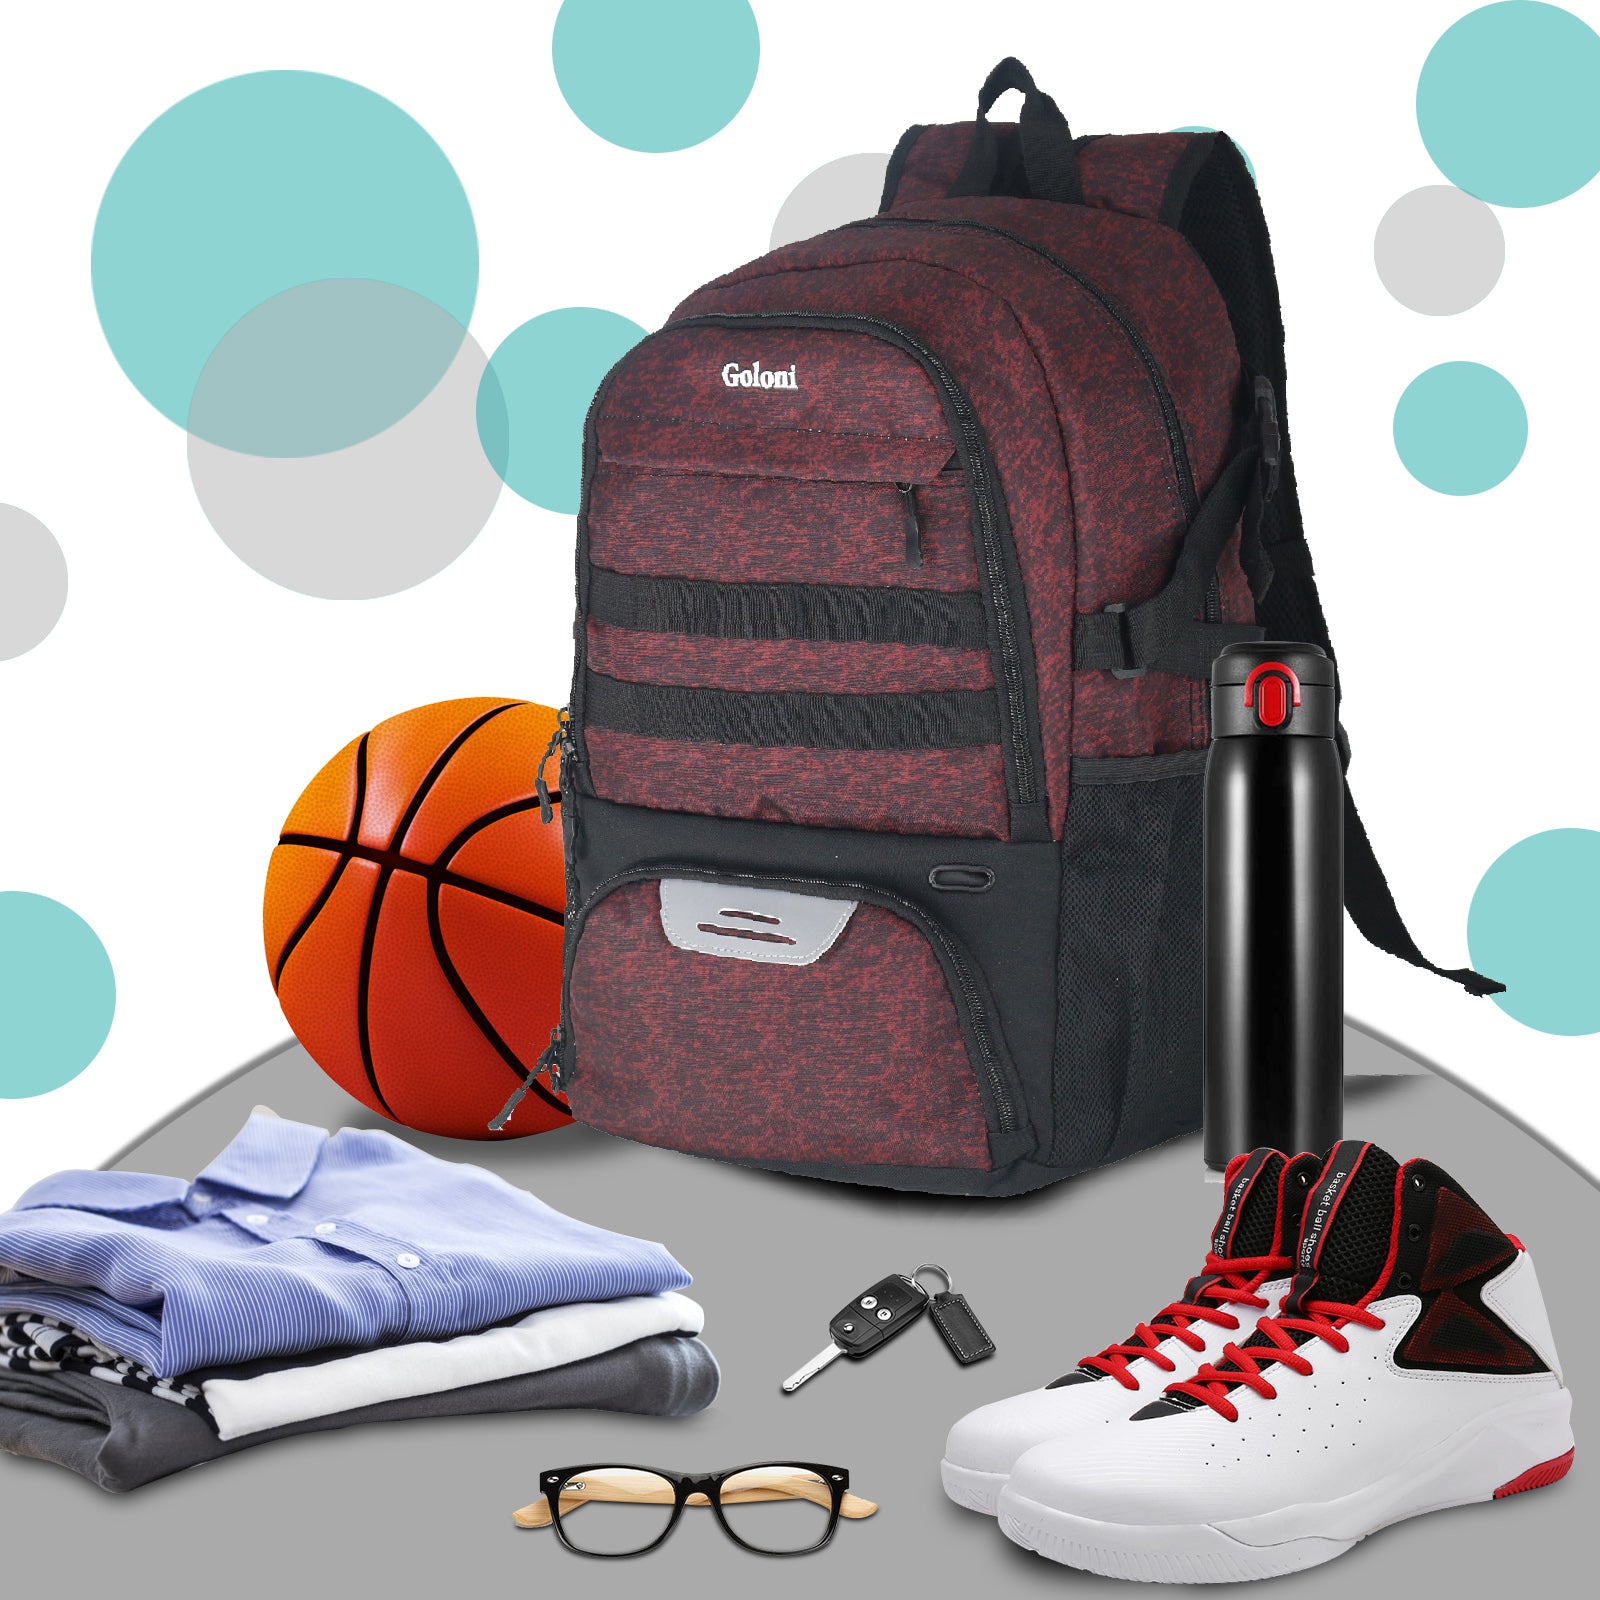  BROTOU Basketball Backpack, Large Basketball Bag with